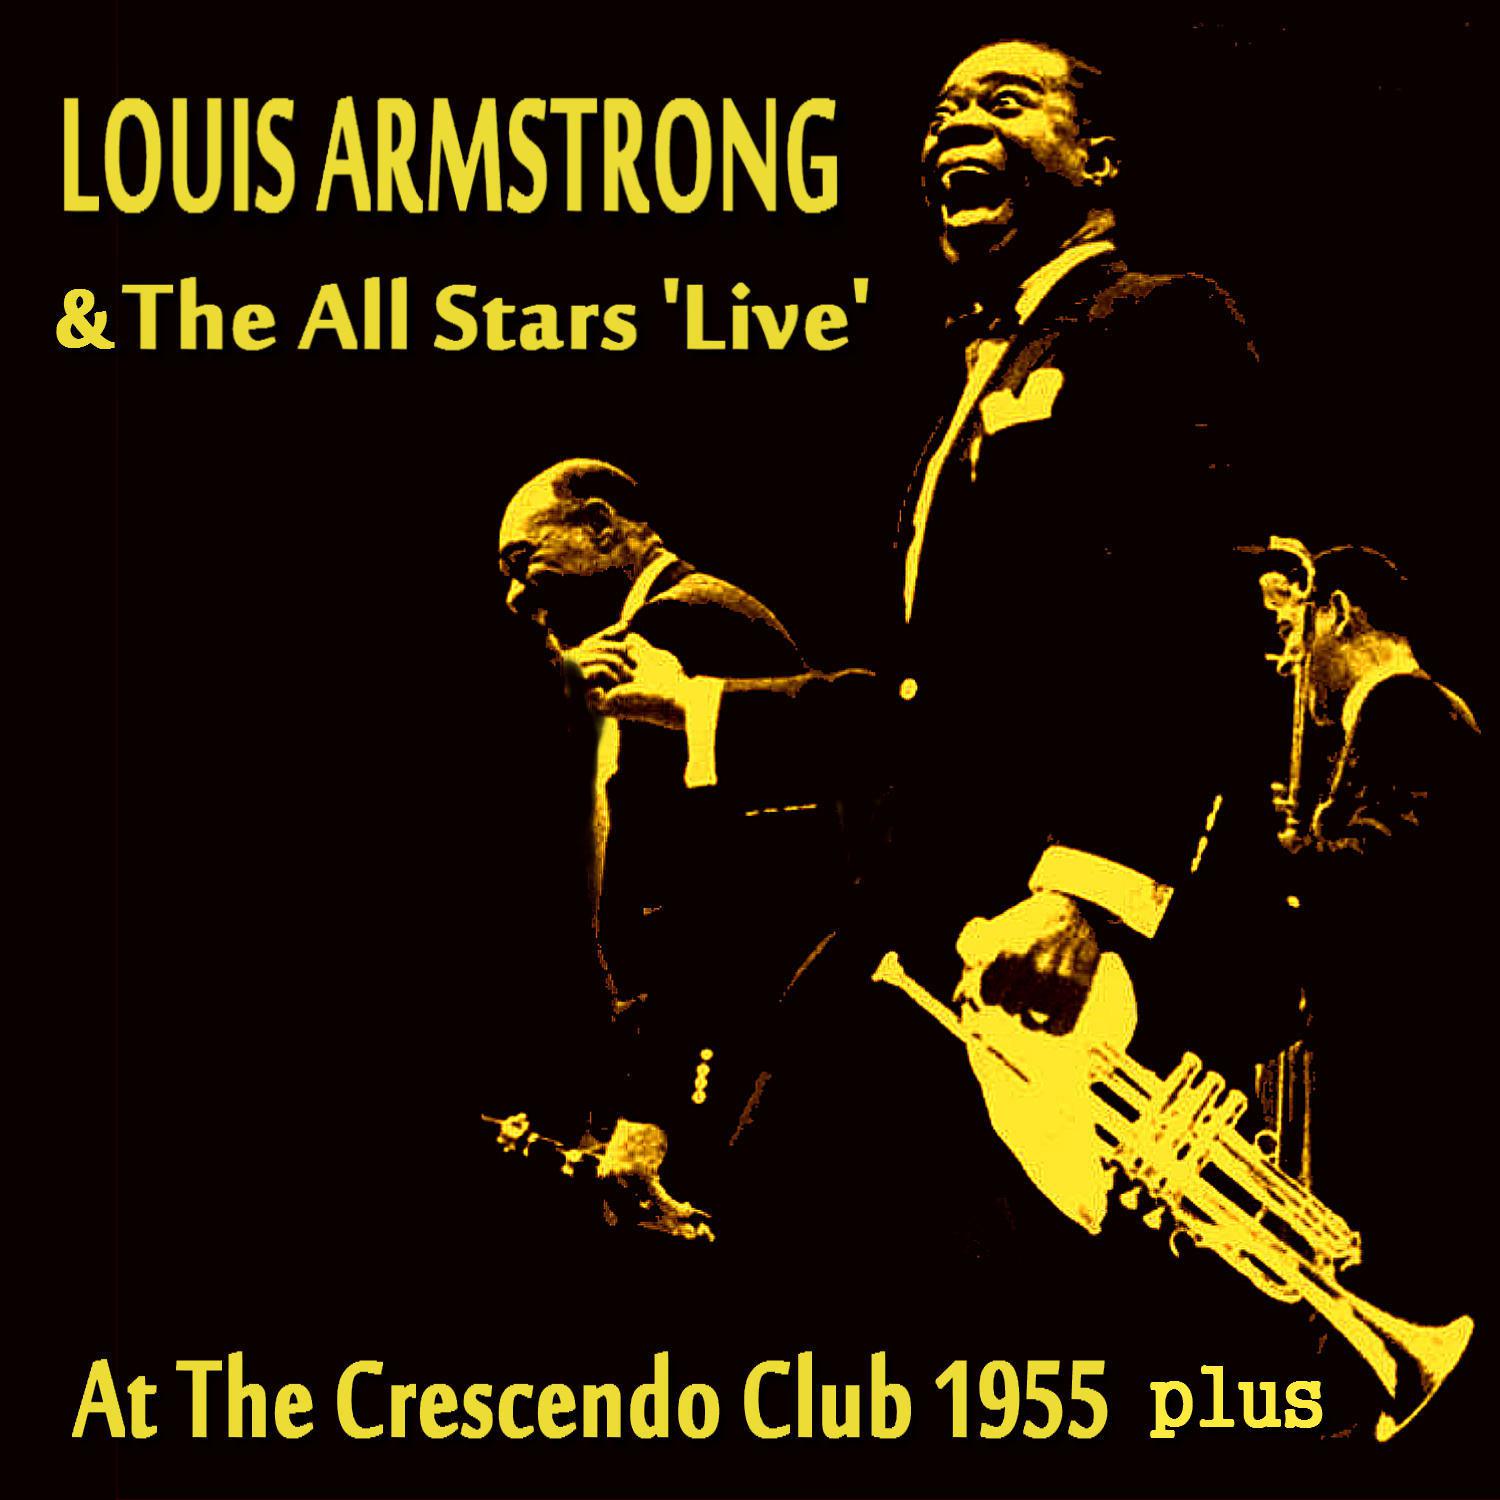 At The Crescendo Club 1955 plus